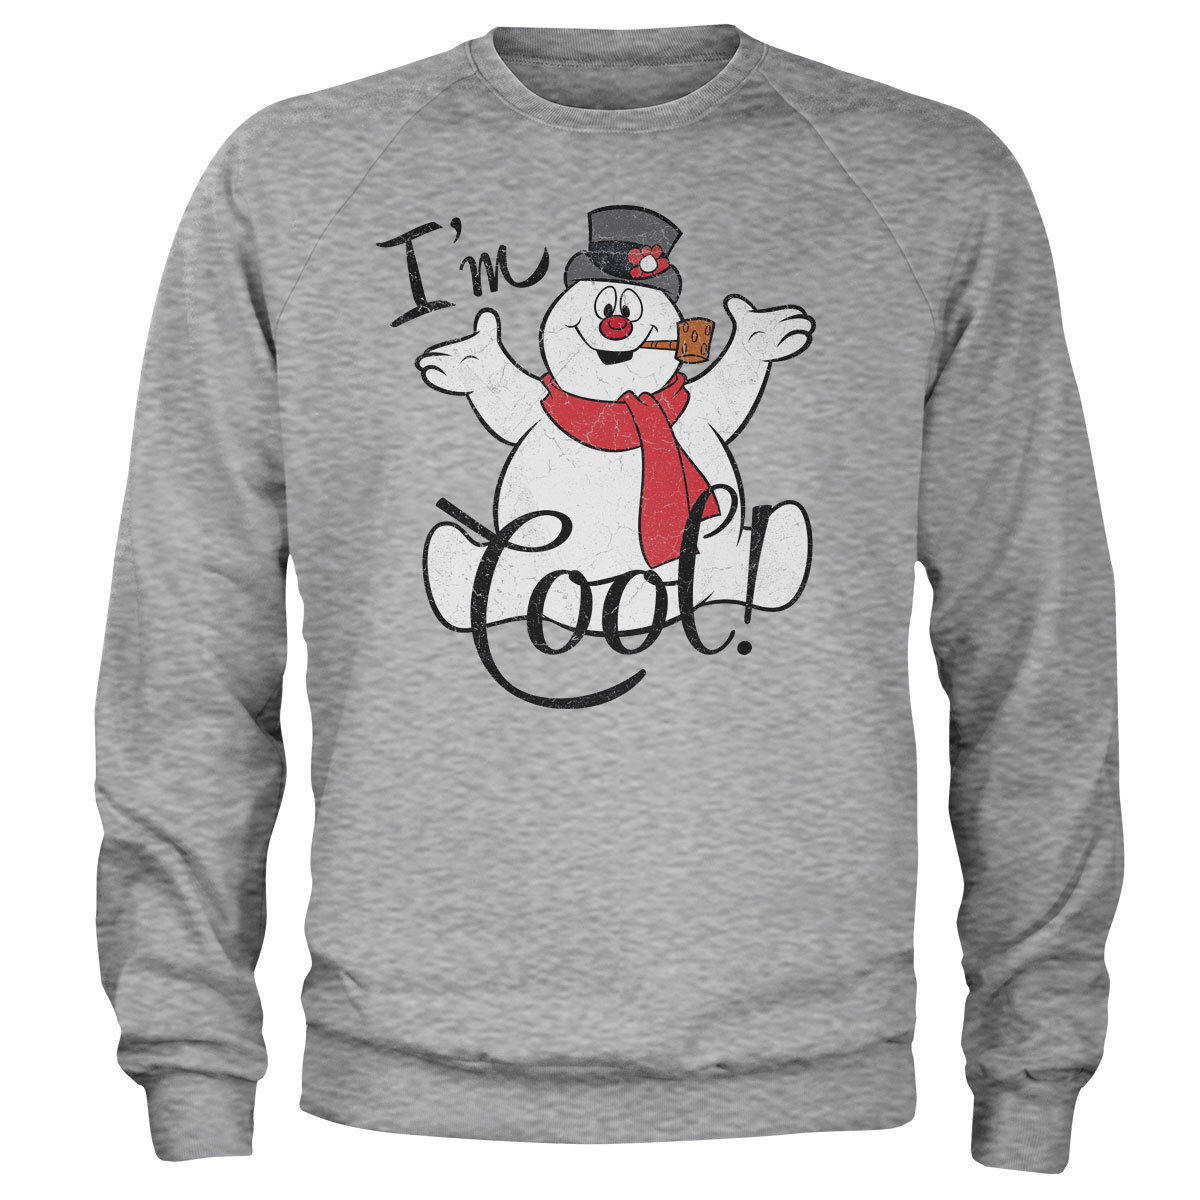 I'm Cool Sweatshirt